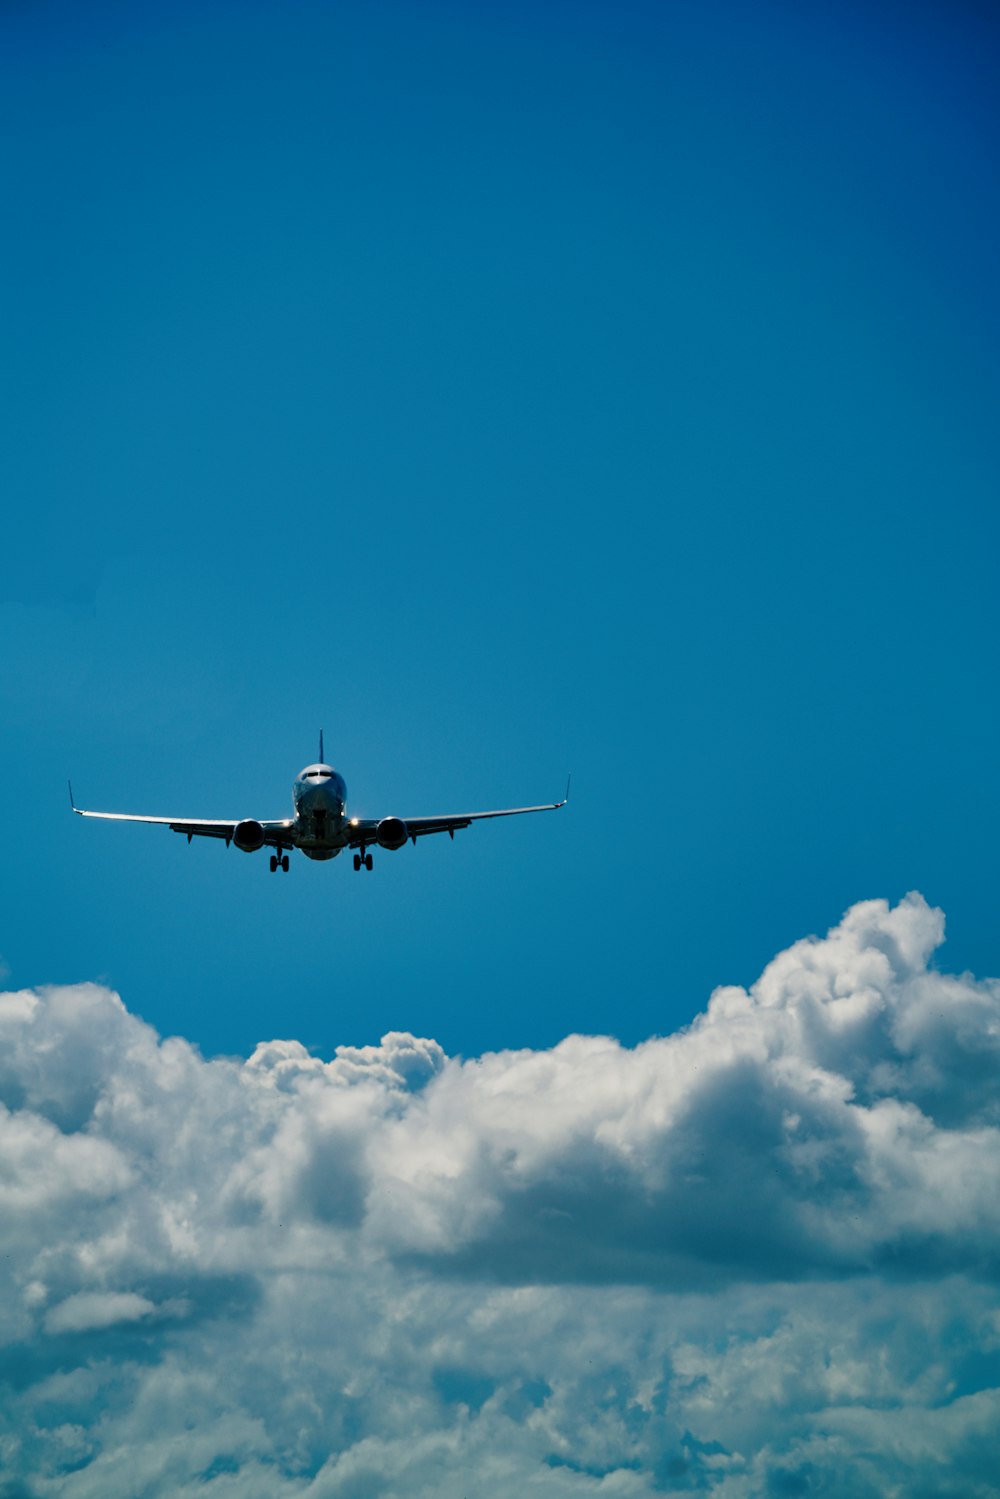 Ein Flugzeug fliegt durch den blauen Himmel